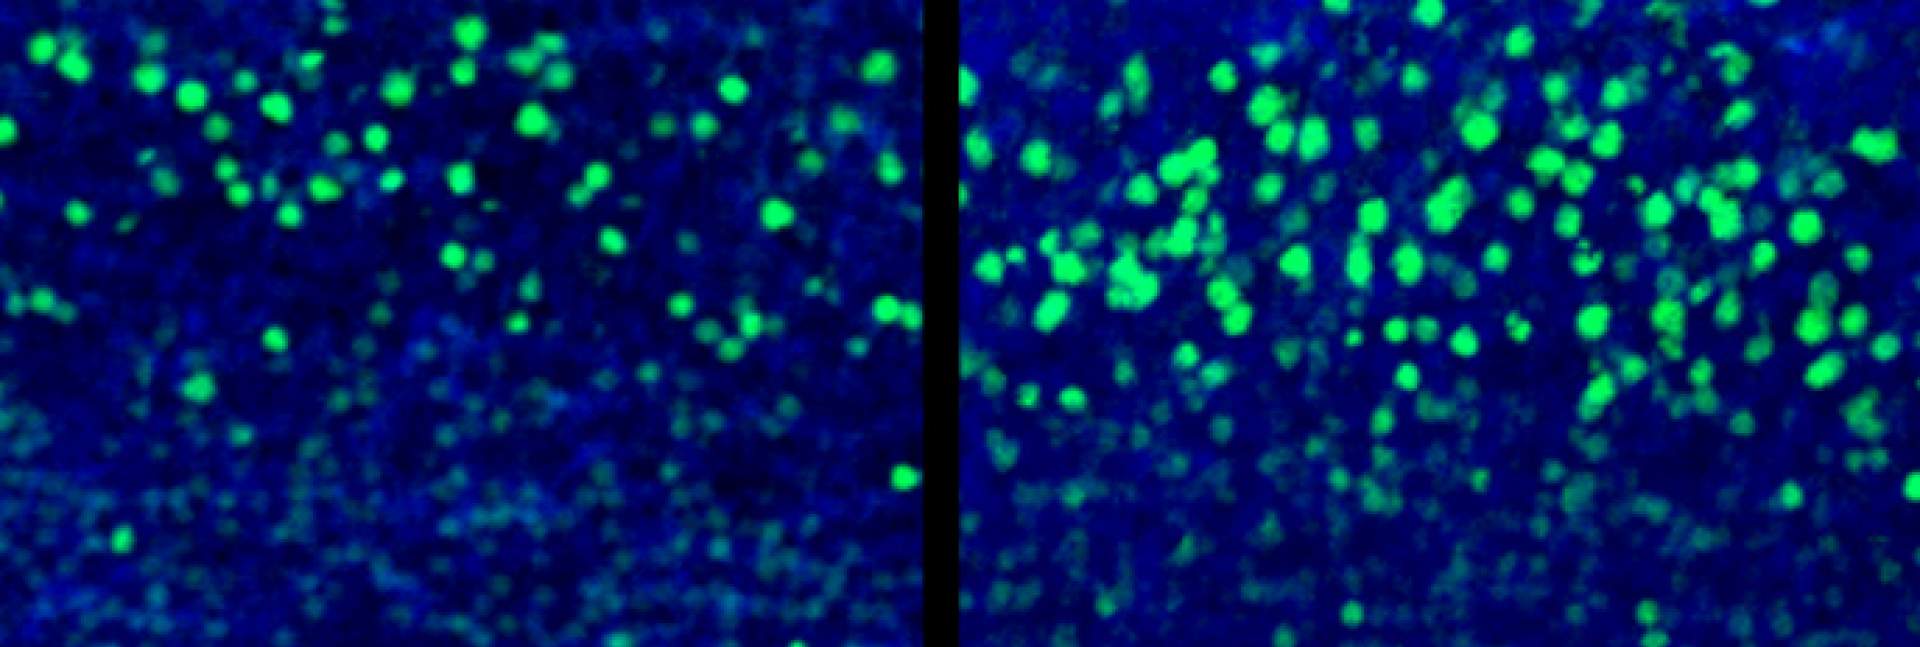 חתך מקליפת המוח של עובר עכבר בן 18 יום מקבוצת הביקורת (שמאל) ומהקבוצה שנחשפה לתגובת המערכת החיסונית של האם (ימין). בירוק – תאי השכבה החמישית שבקליפת המוח (CTIP2), המיוצרים בעודף בקבוצה שנחשפה לתגובה החיסונית. קנה מידה: 20 מיקרומטר